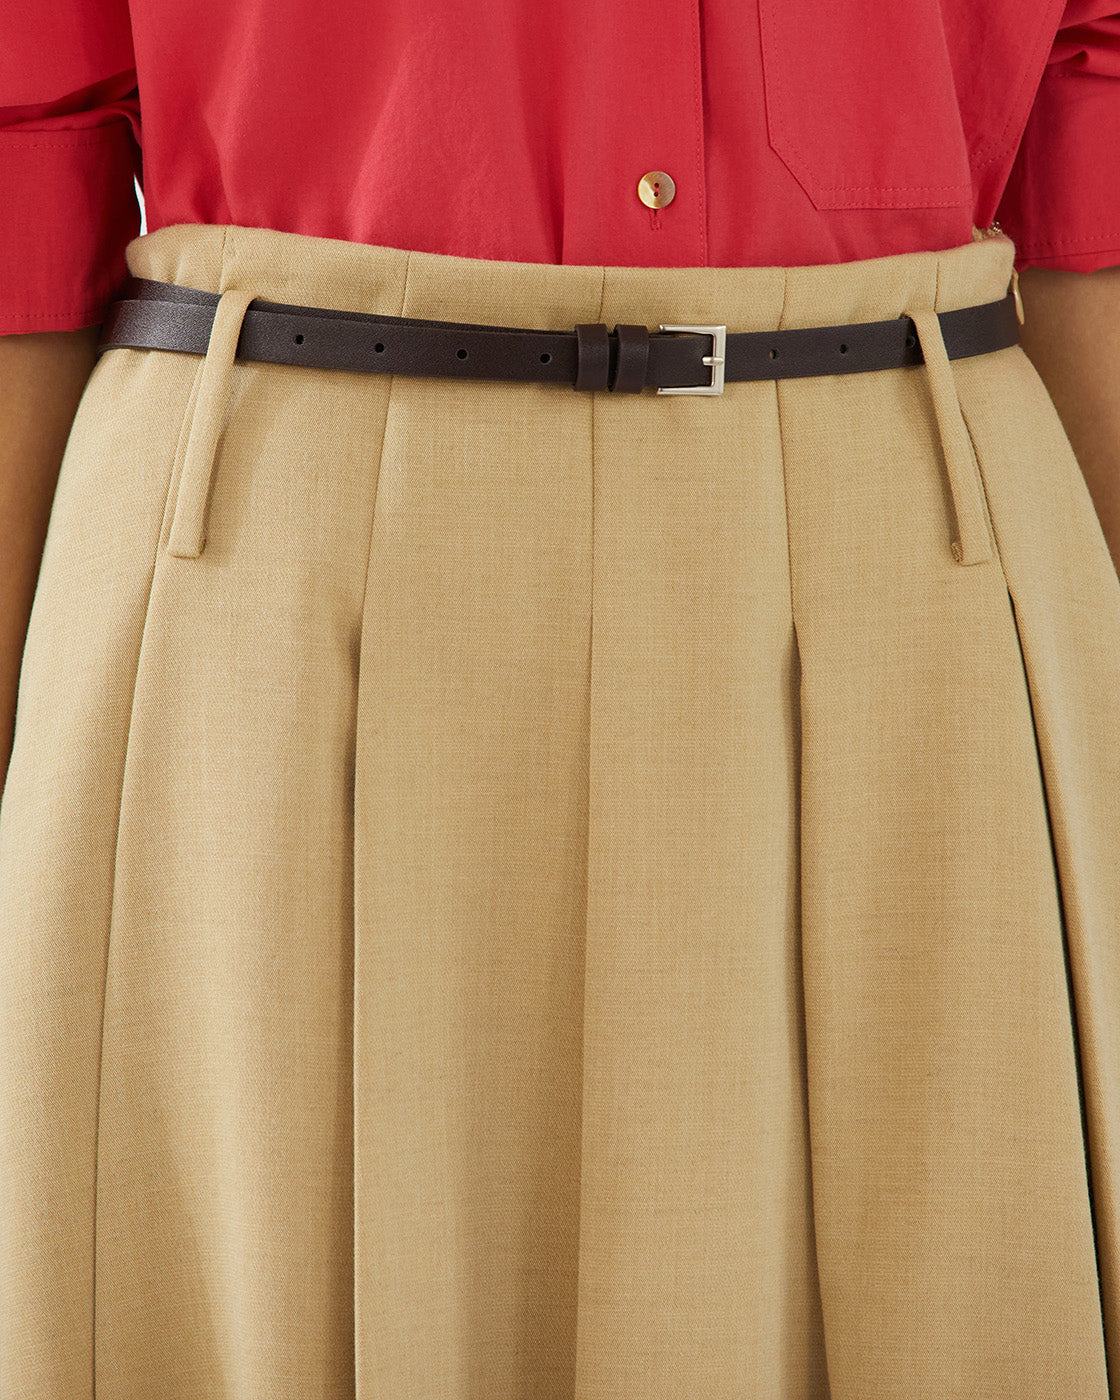 Odette Skirt Tencel Blend Suiting Beige